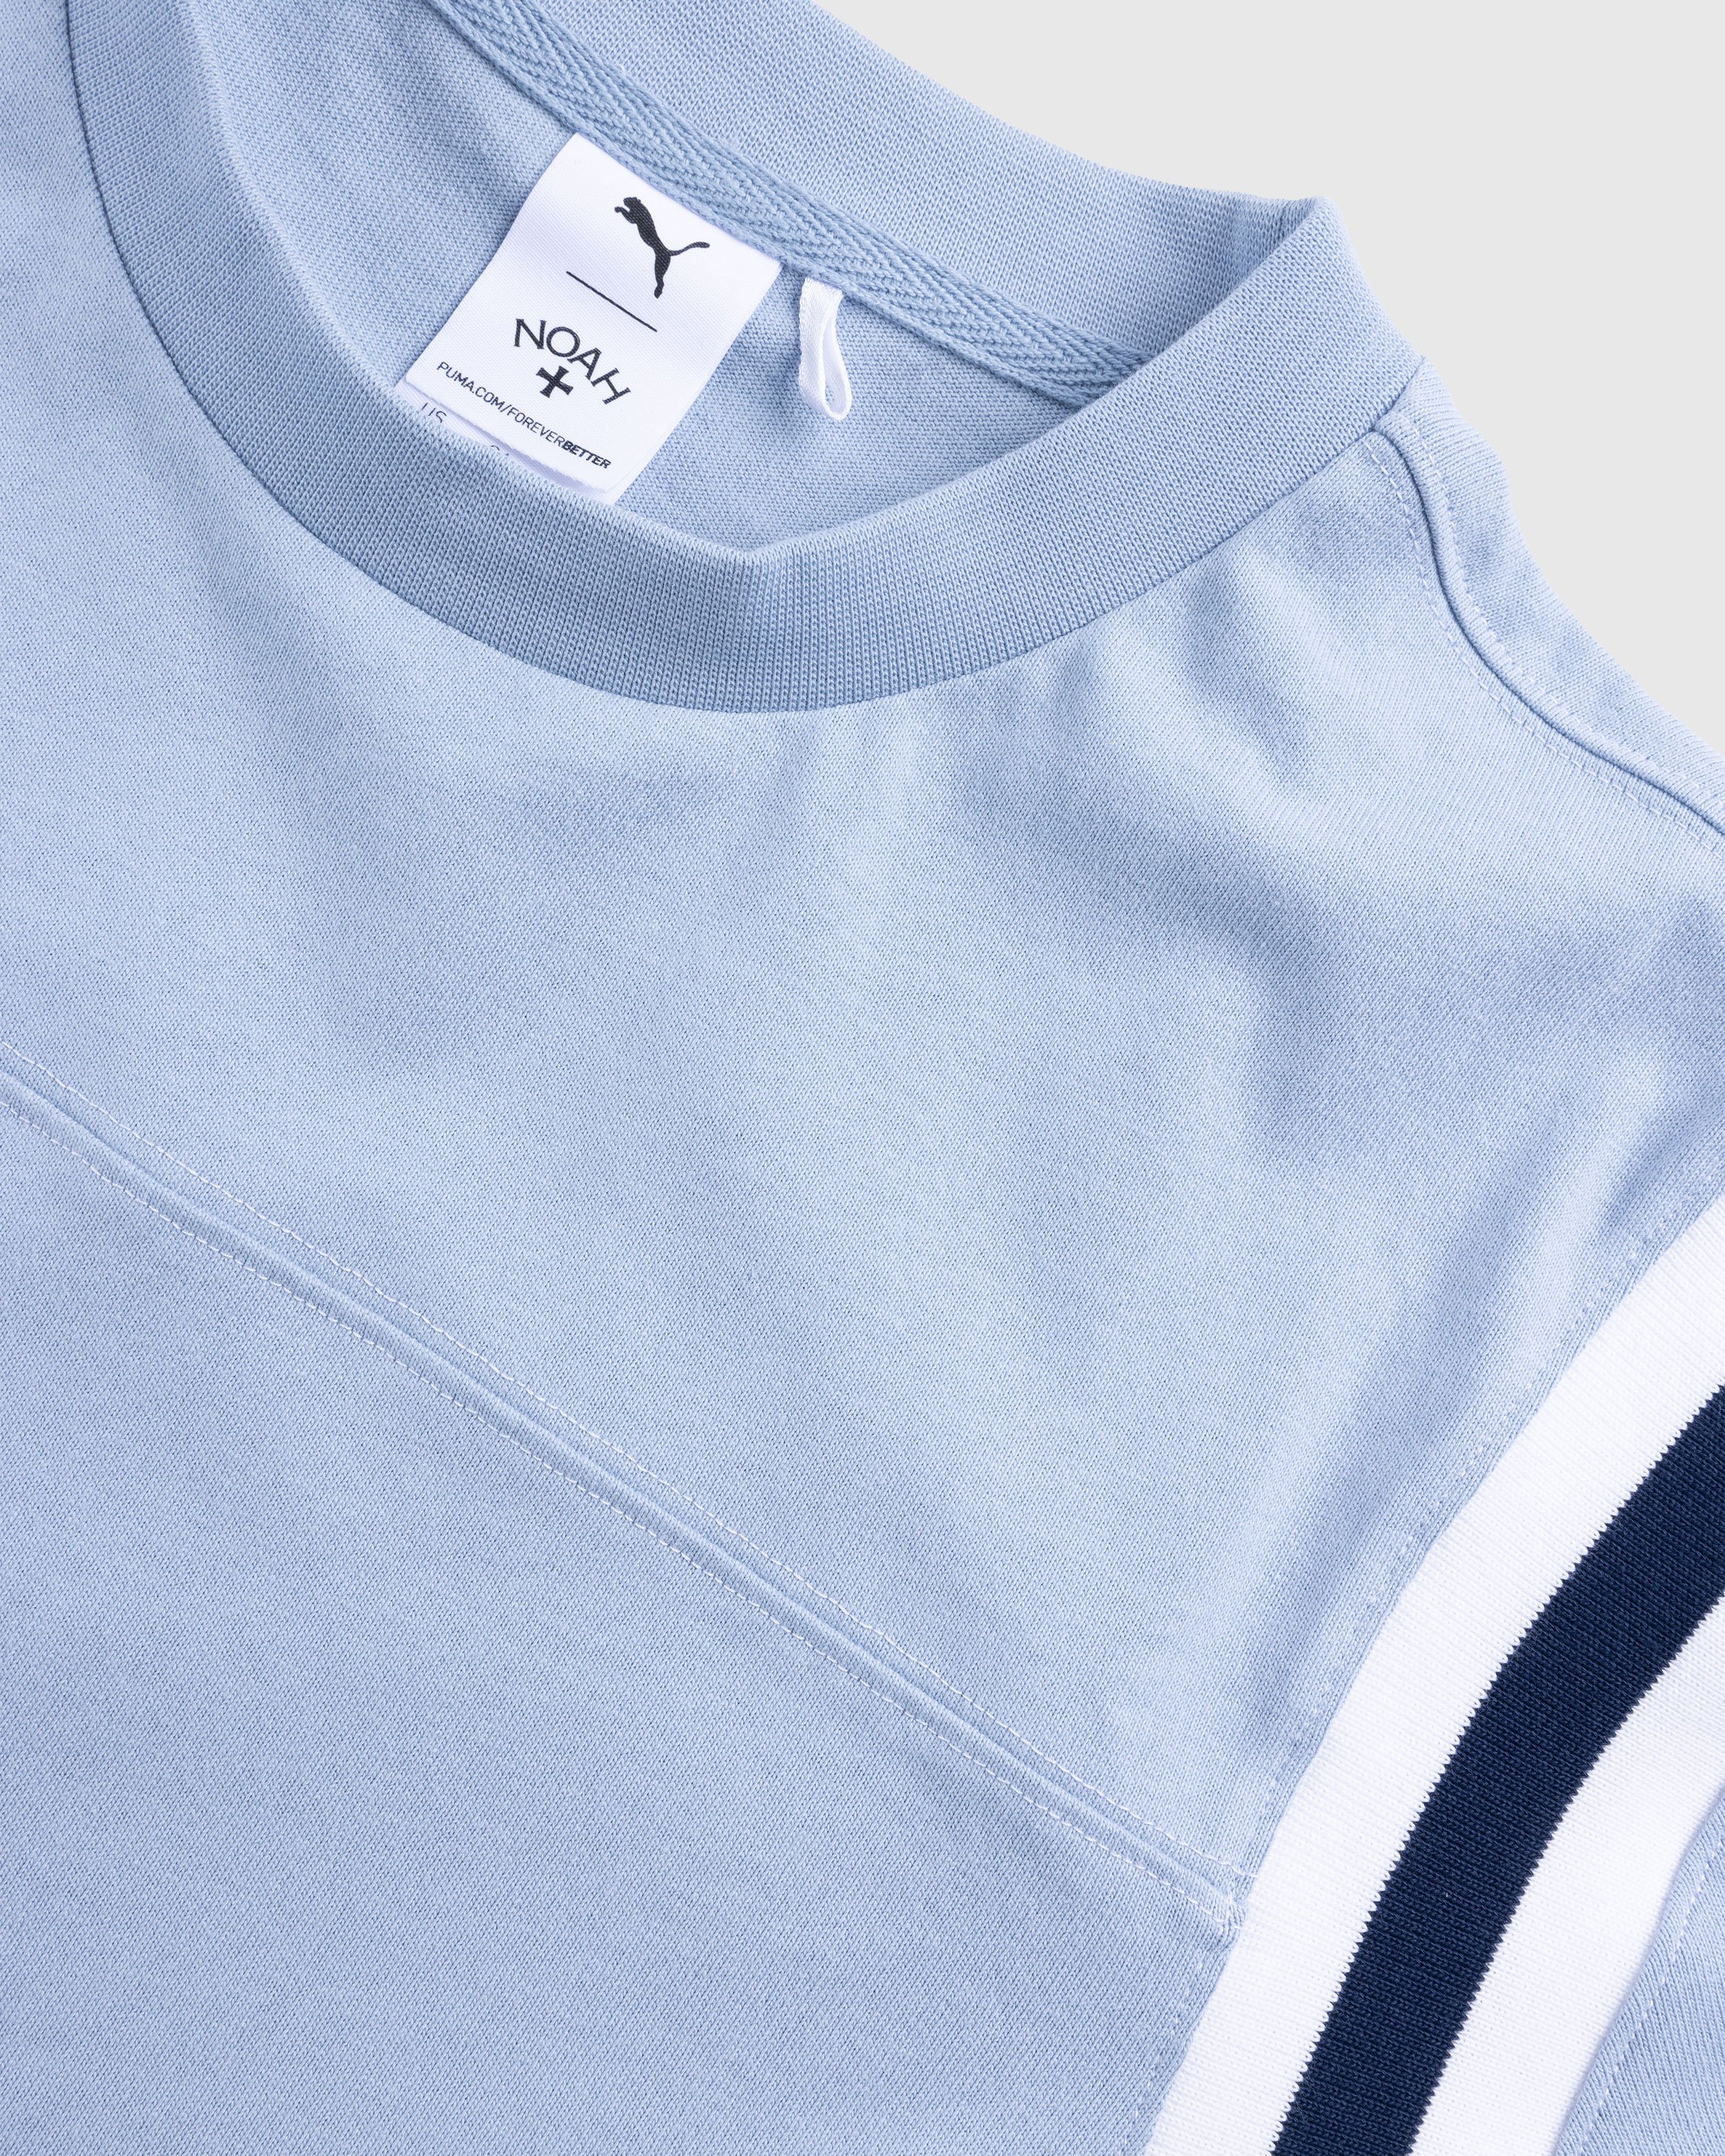 Puma x Noah - Jet Sleeve T-Shirt Blue Wash - Clothing - Blue - Image 6